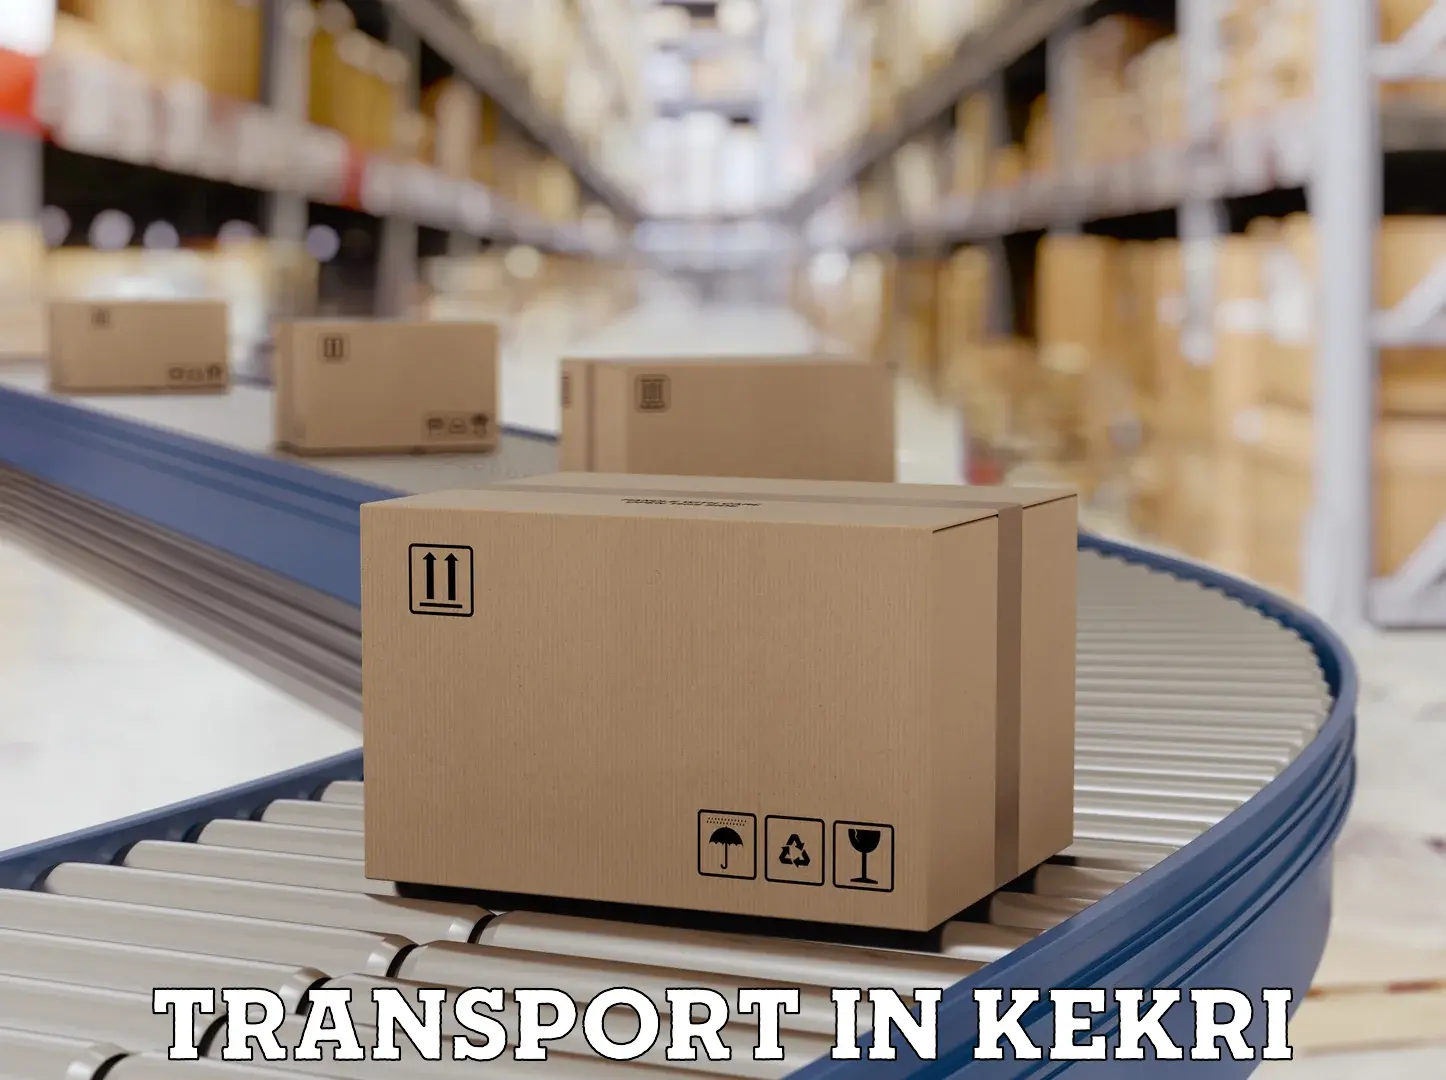 Nearest transport service in Kekri